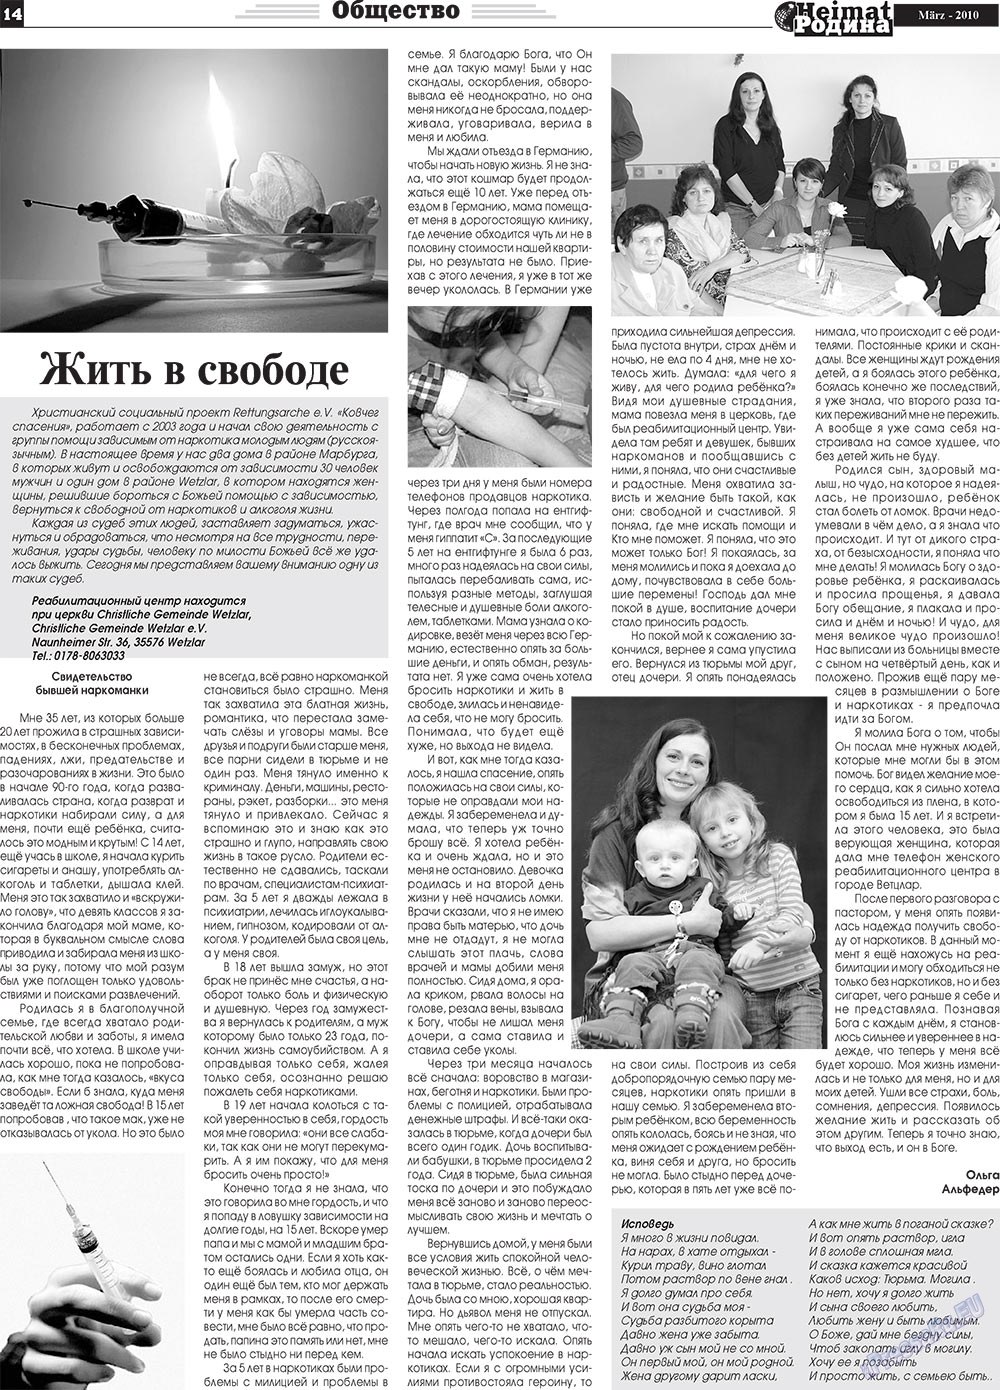 Heimat-Родина (газета). 2010 год, номер 3, стр. 14